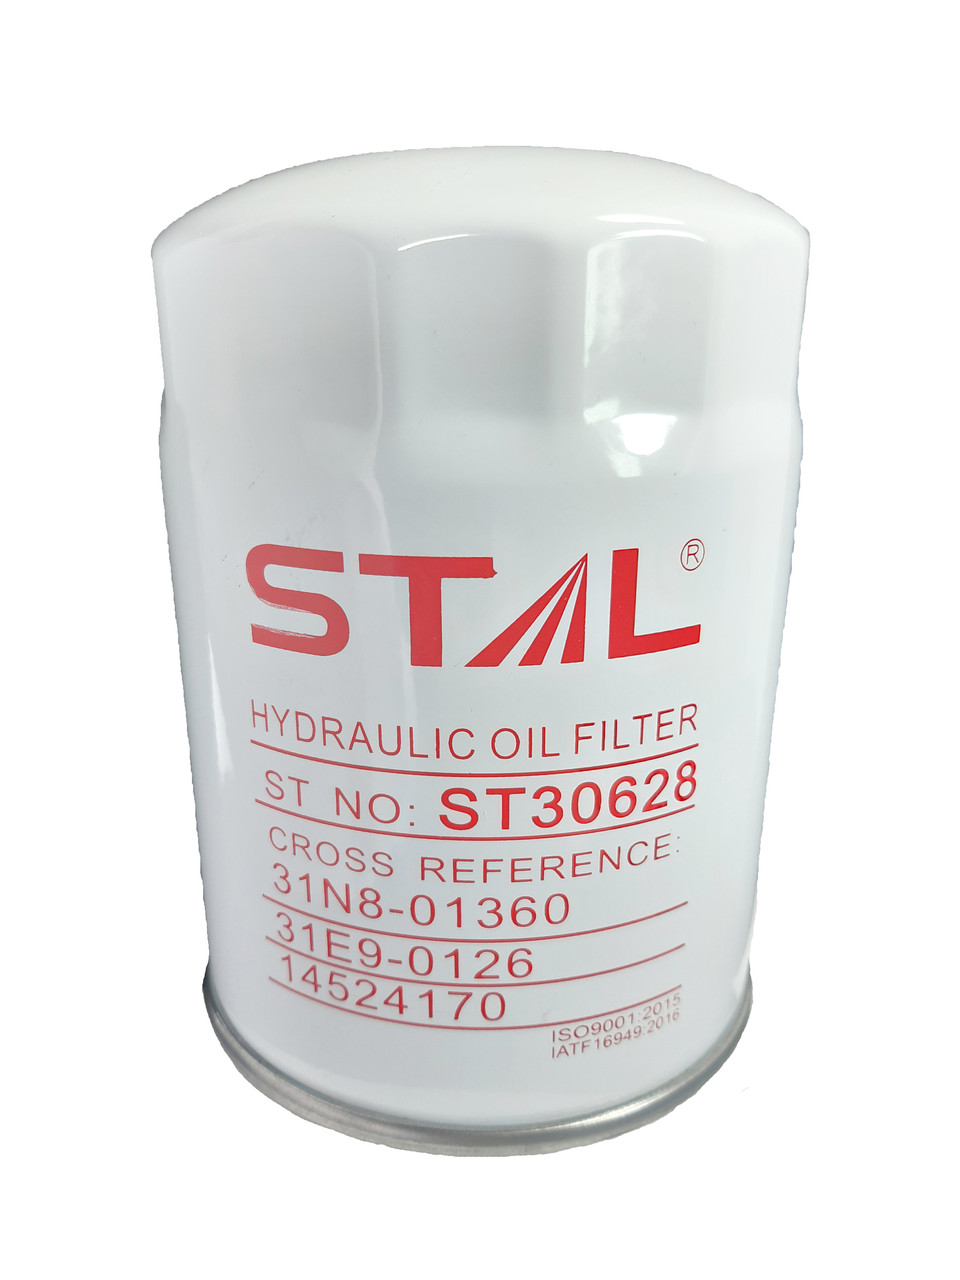 Гидравлический фильтр STAL ST30628  HYUNDAI 31E9-0126